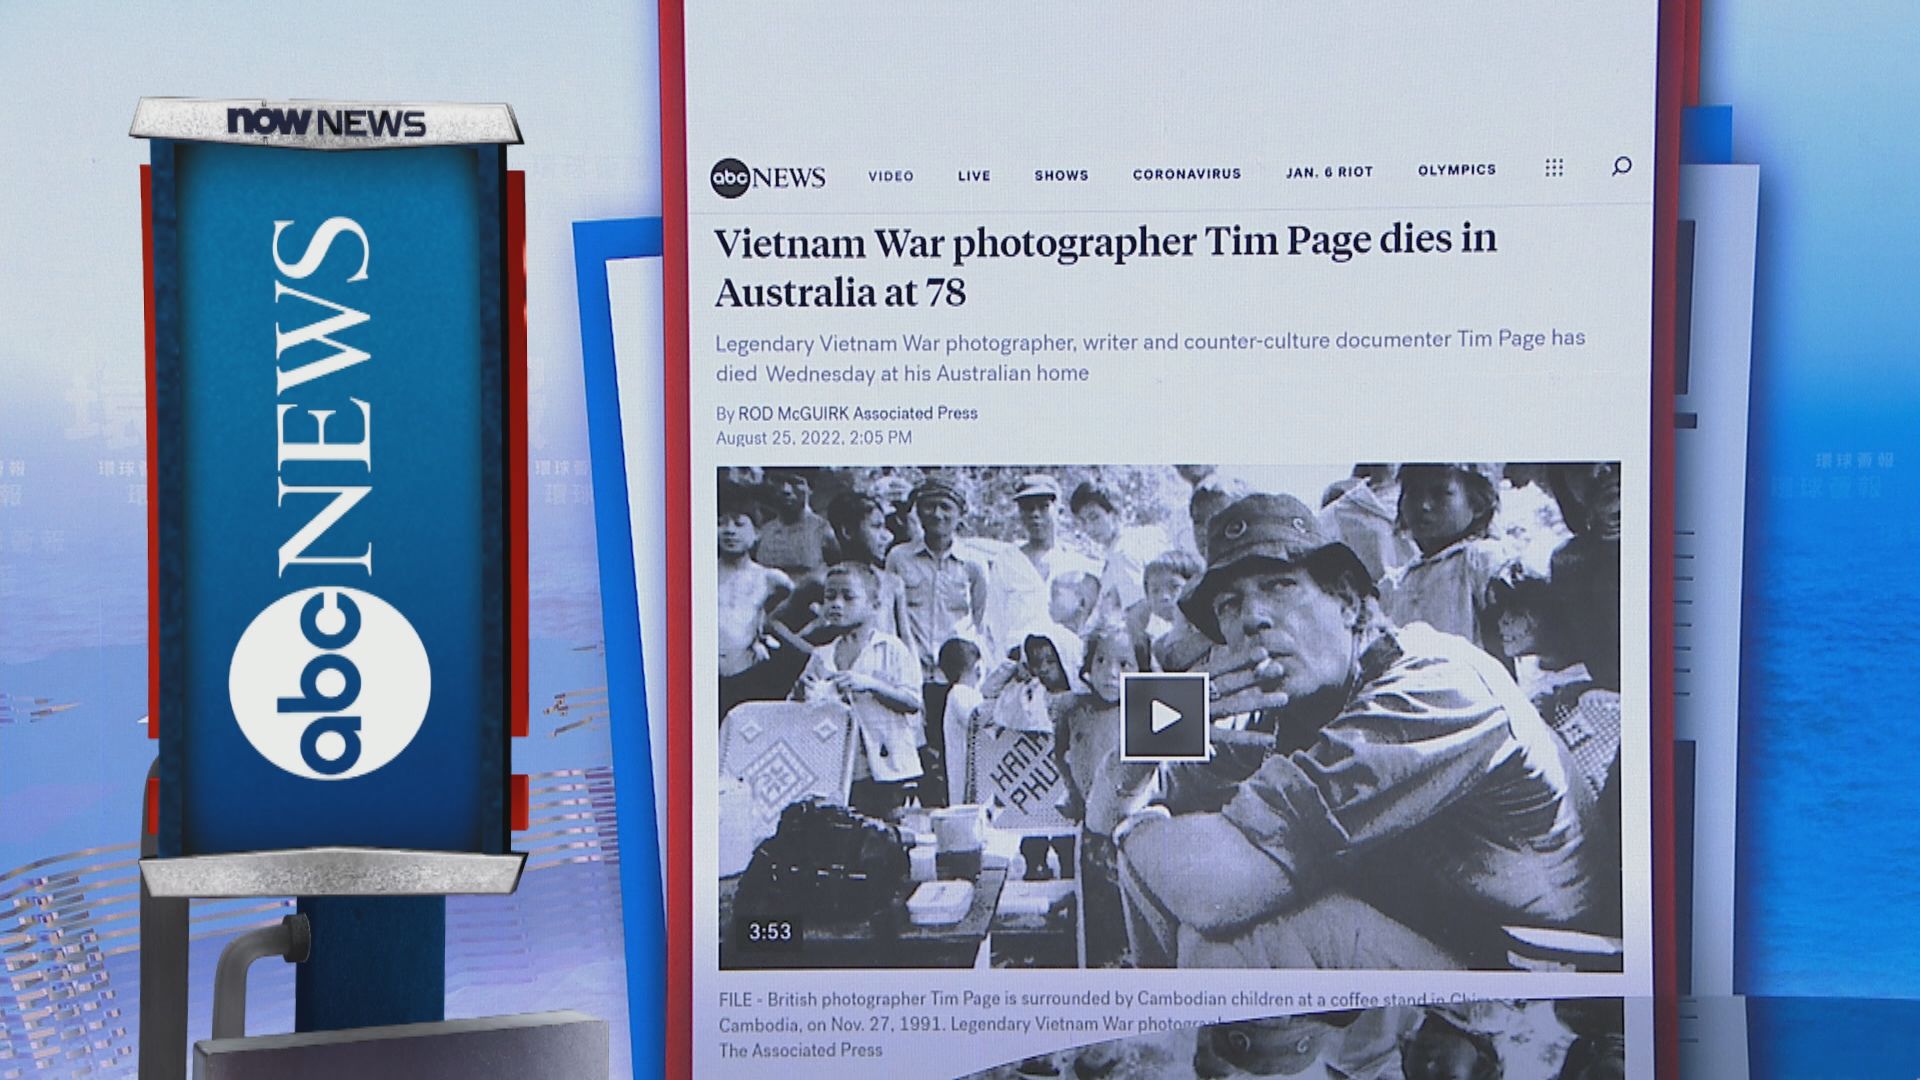 【環球薈報】著名越戰攝影記者佩奇病逝終年78歲